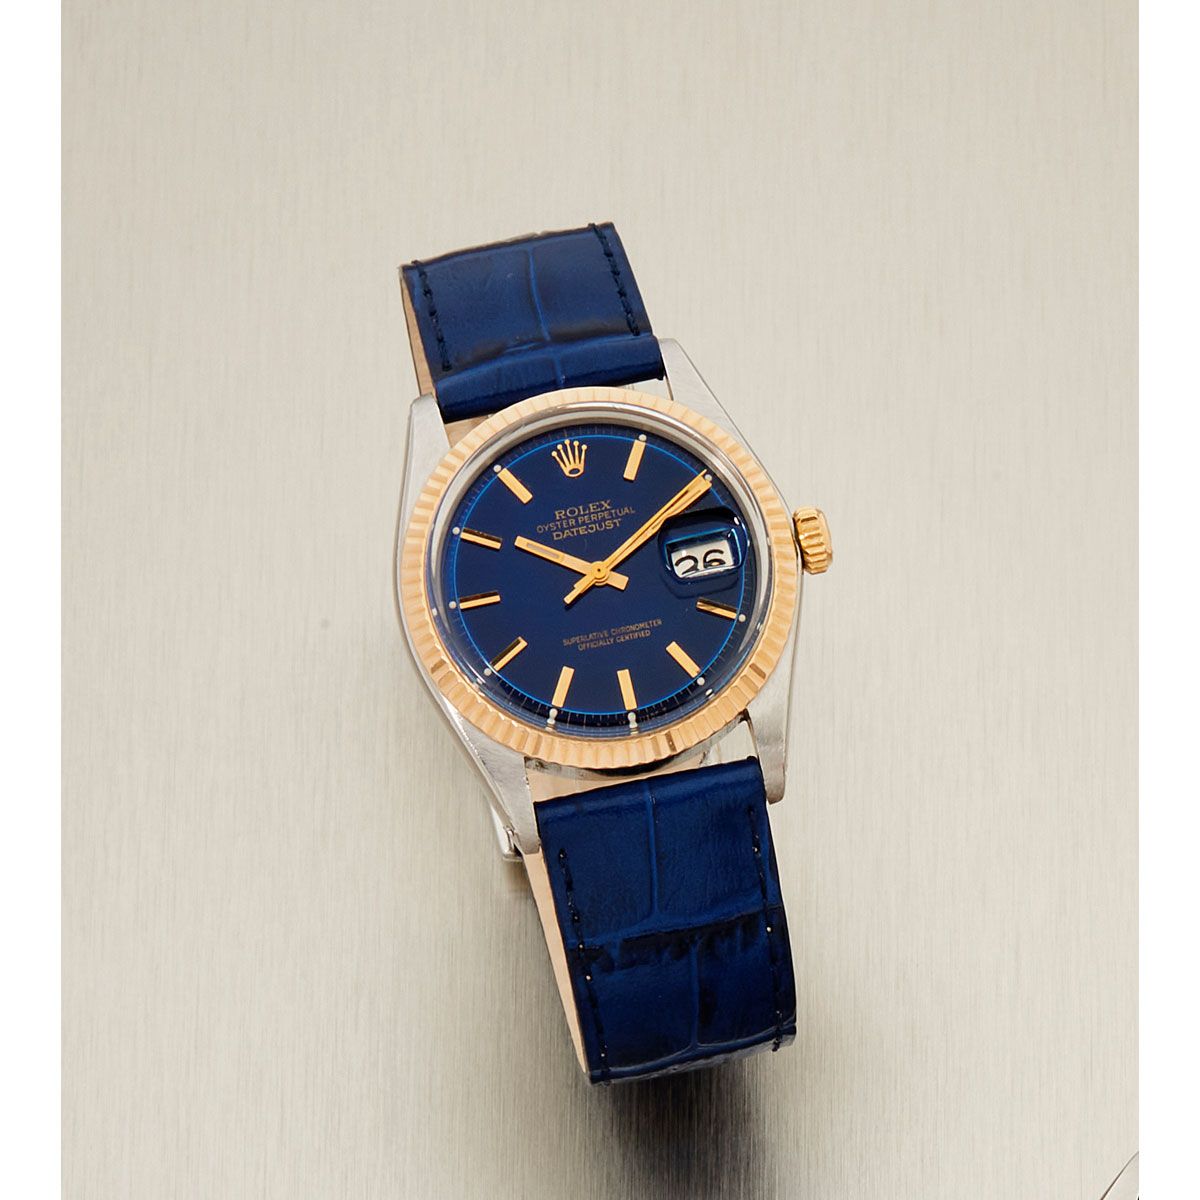 Null Rolex, Datejust, Réf. 1601, n° 4037xxx, vers 1976.

Une belle montre en aci&hellip;